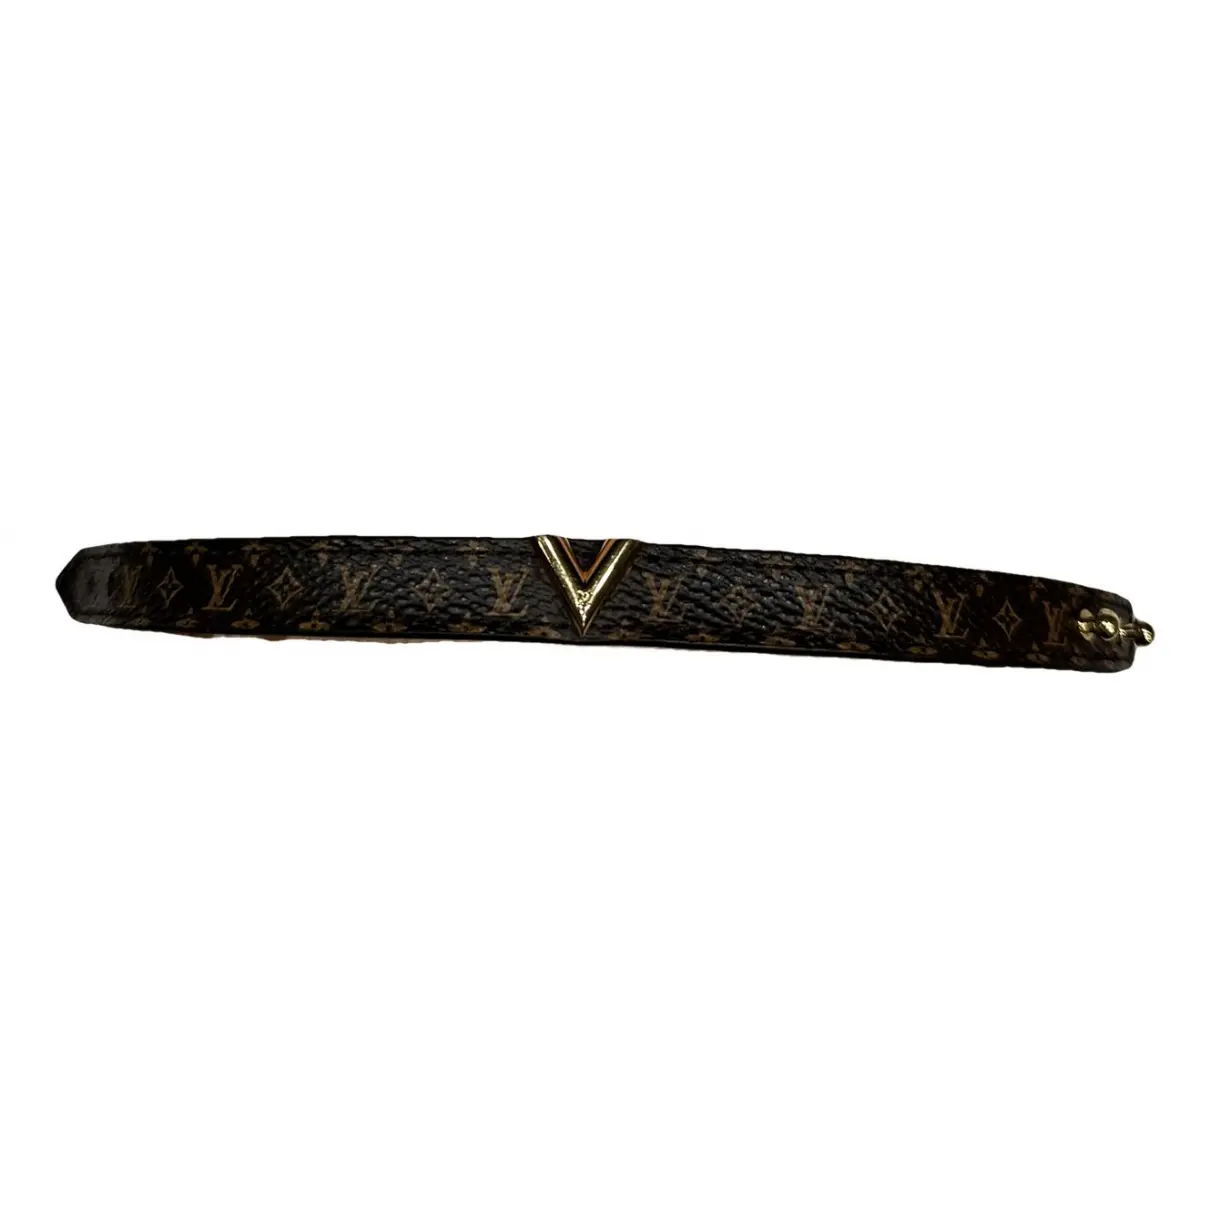 Essential V leather bracelet